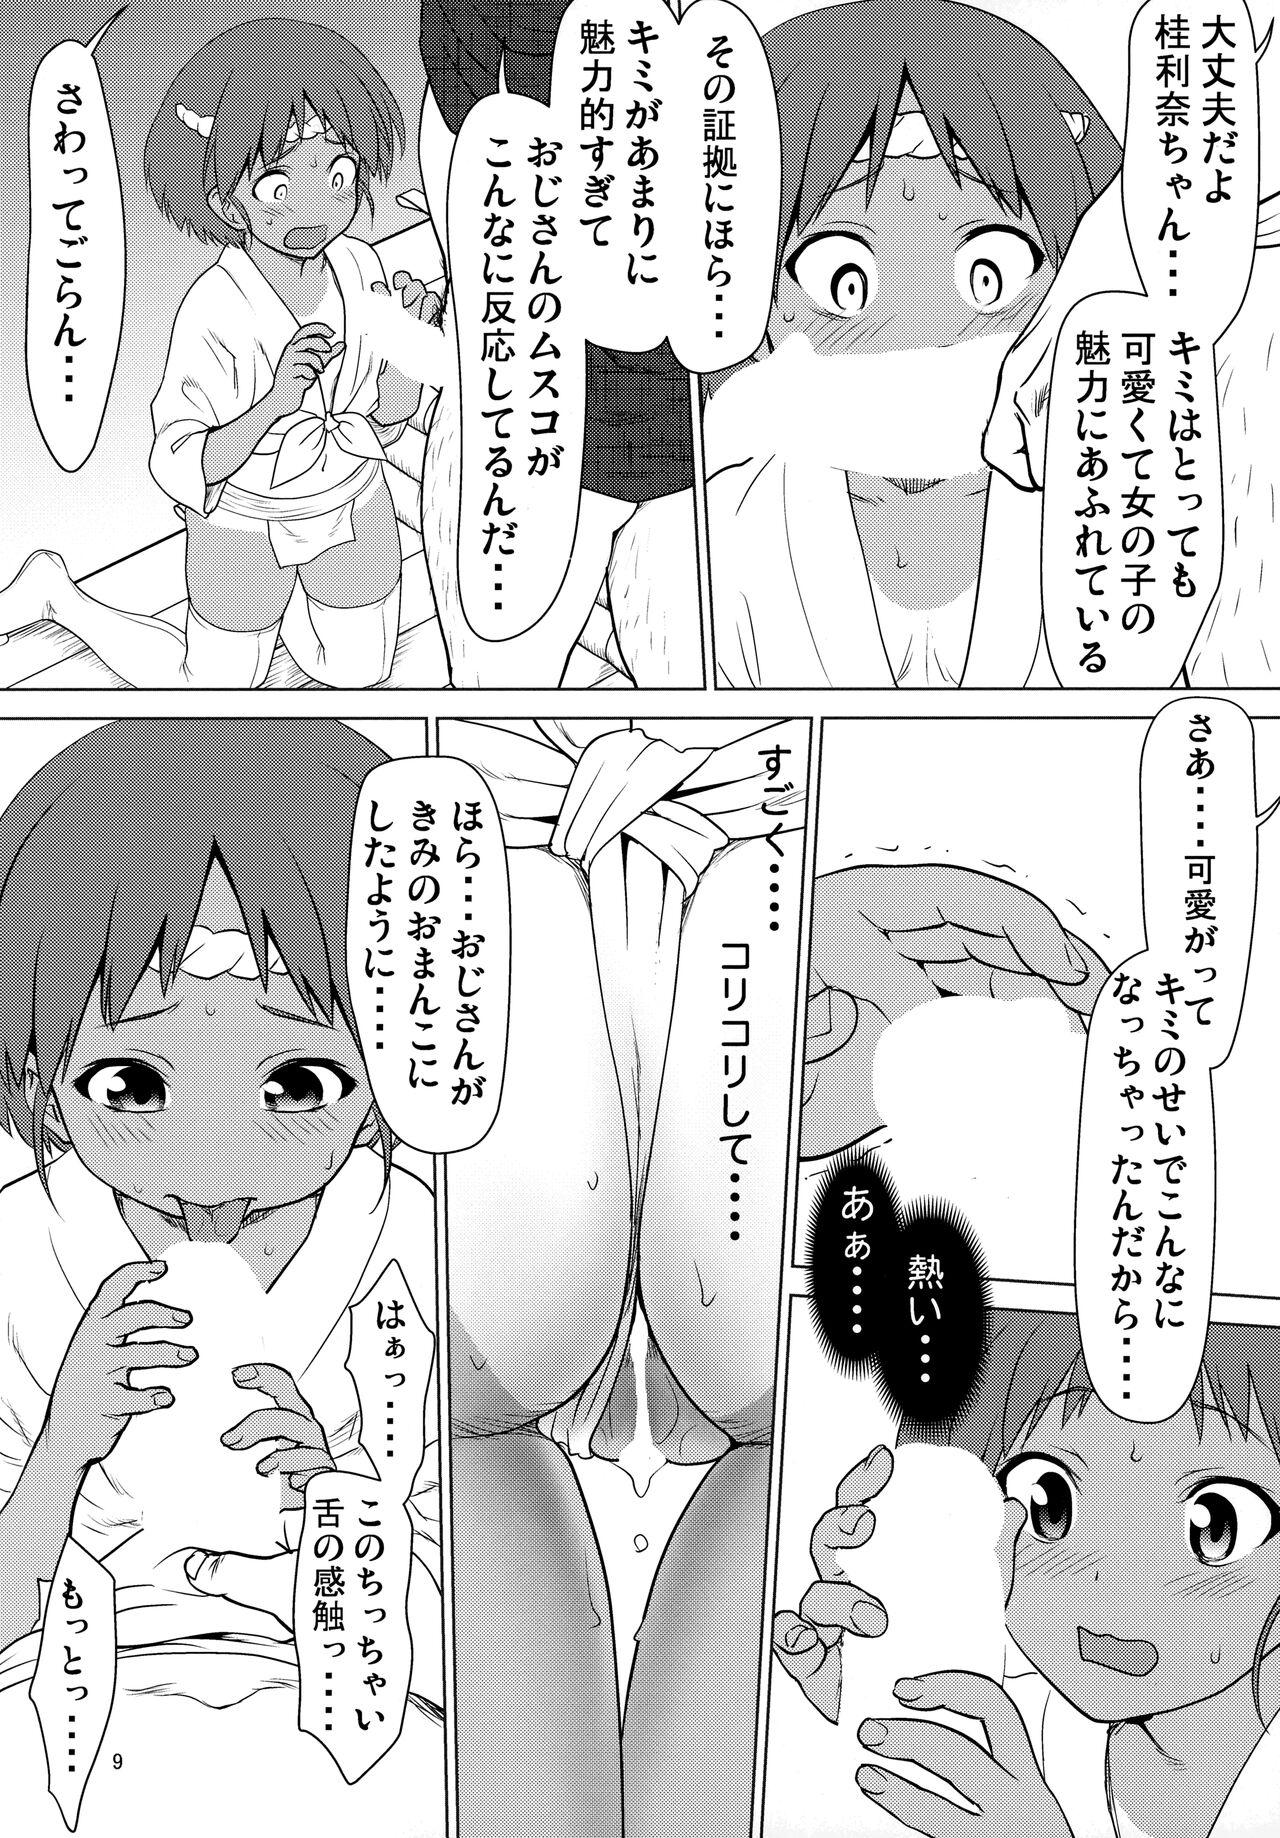 Trio Hiyake Fundoshi no Karina-chan to Monokage de…. - Girls und panzer Assfucking - Page 8